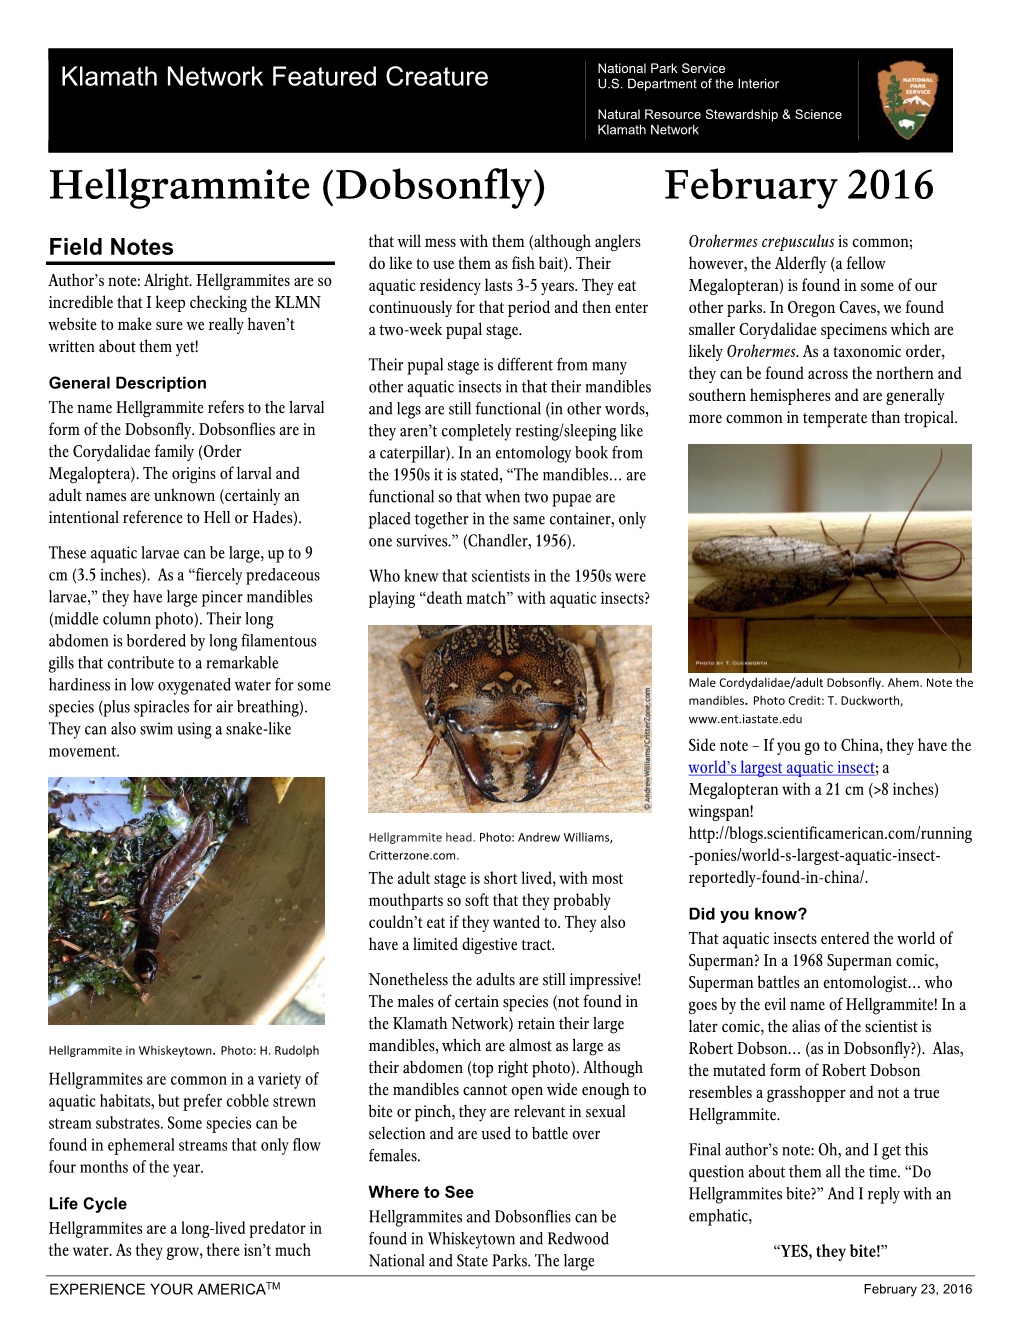 Hellgrammite (Dobsonfly) February 2016